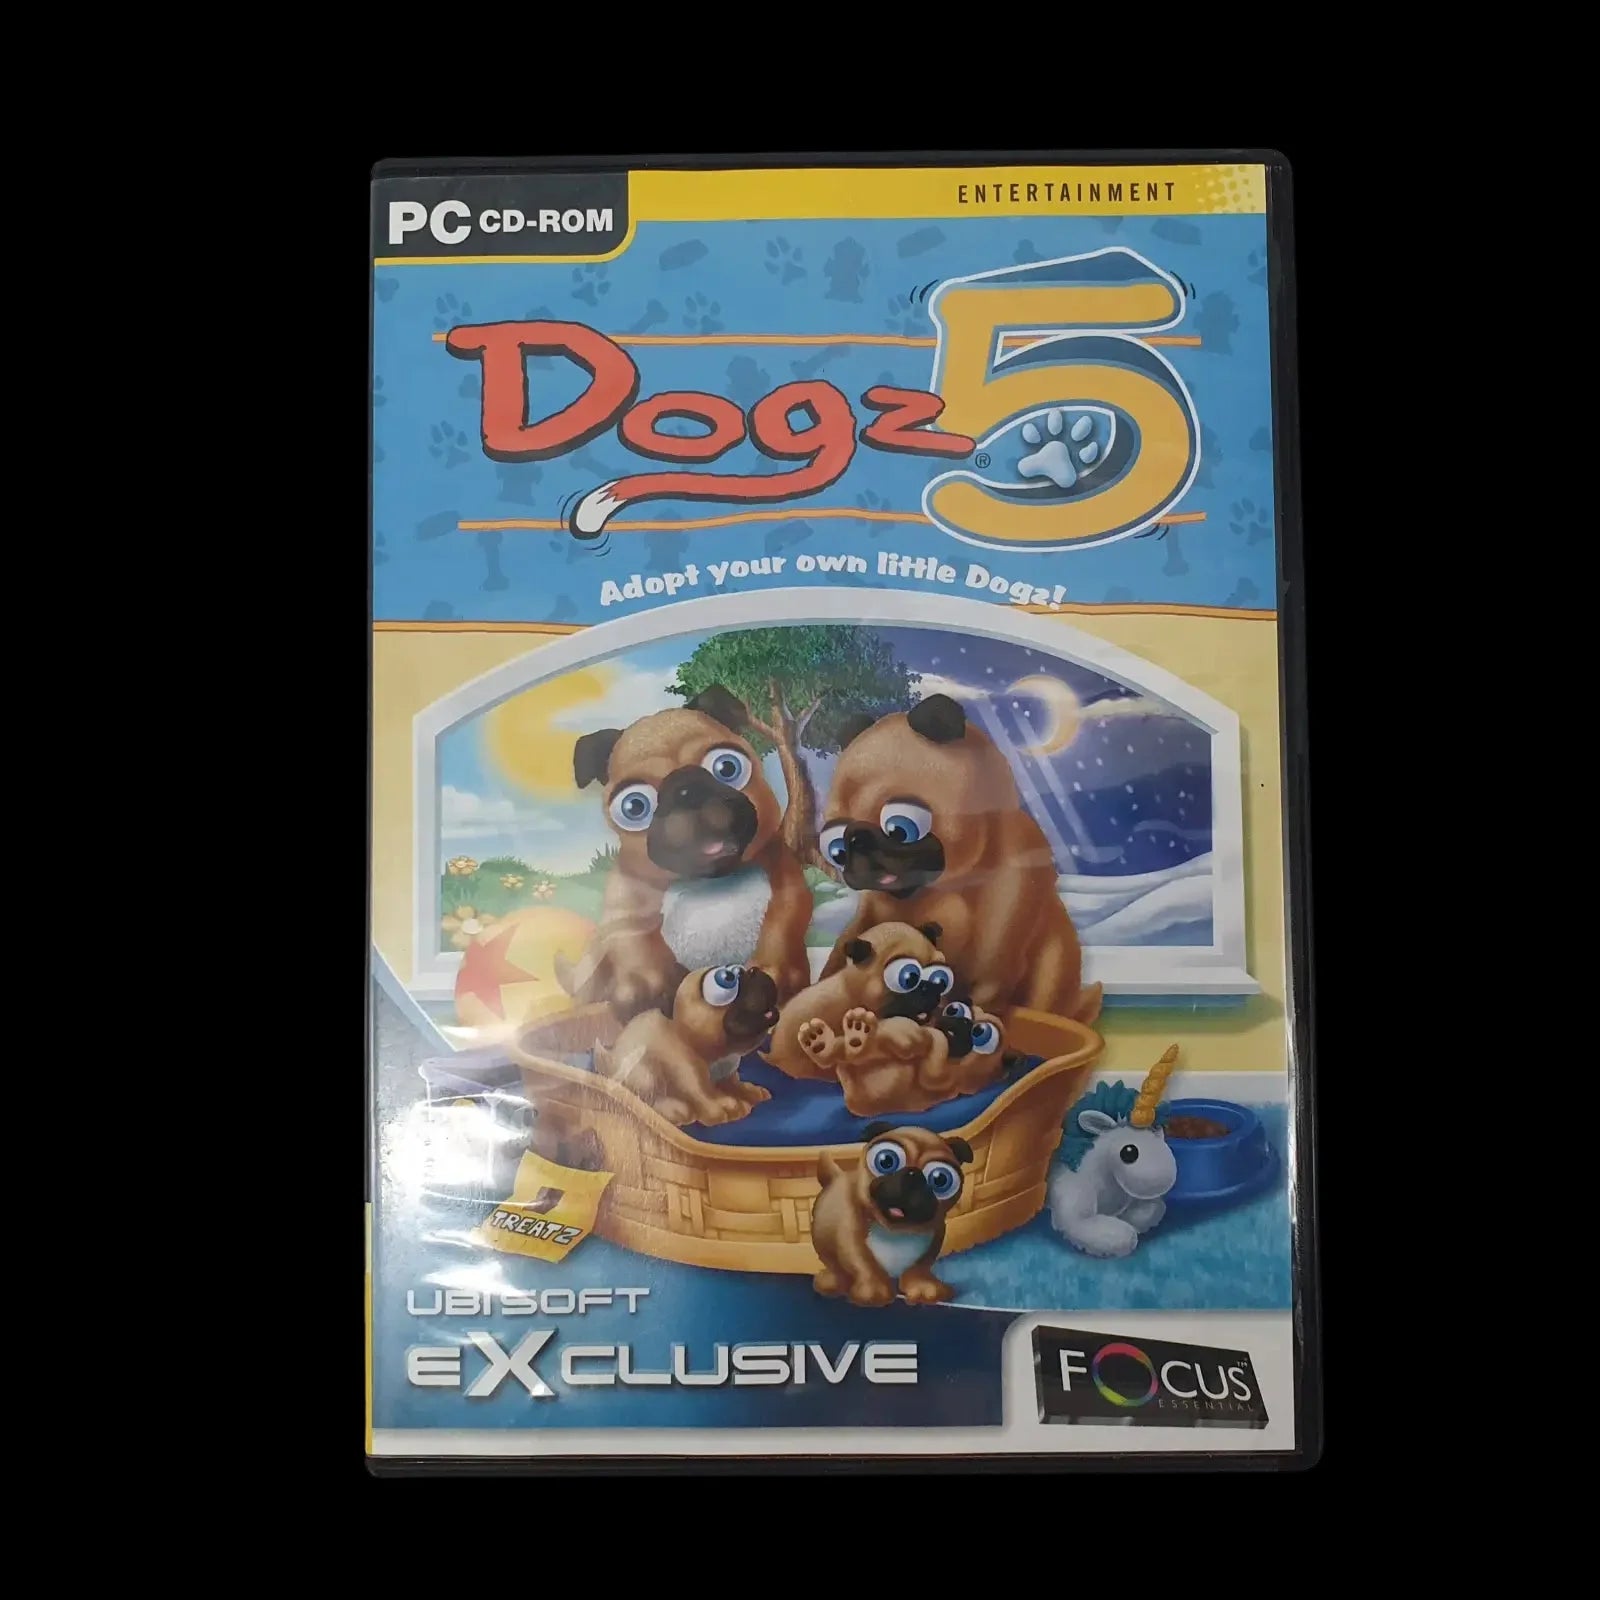 Dogz 5 Pc Ubisoft 2002 Video Game Vintage - Games - 1 - 2473